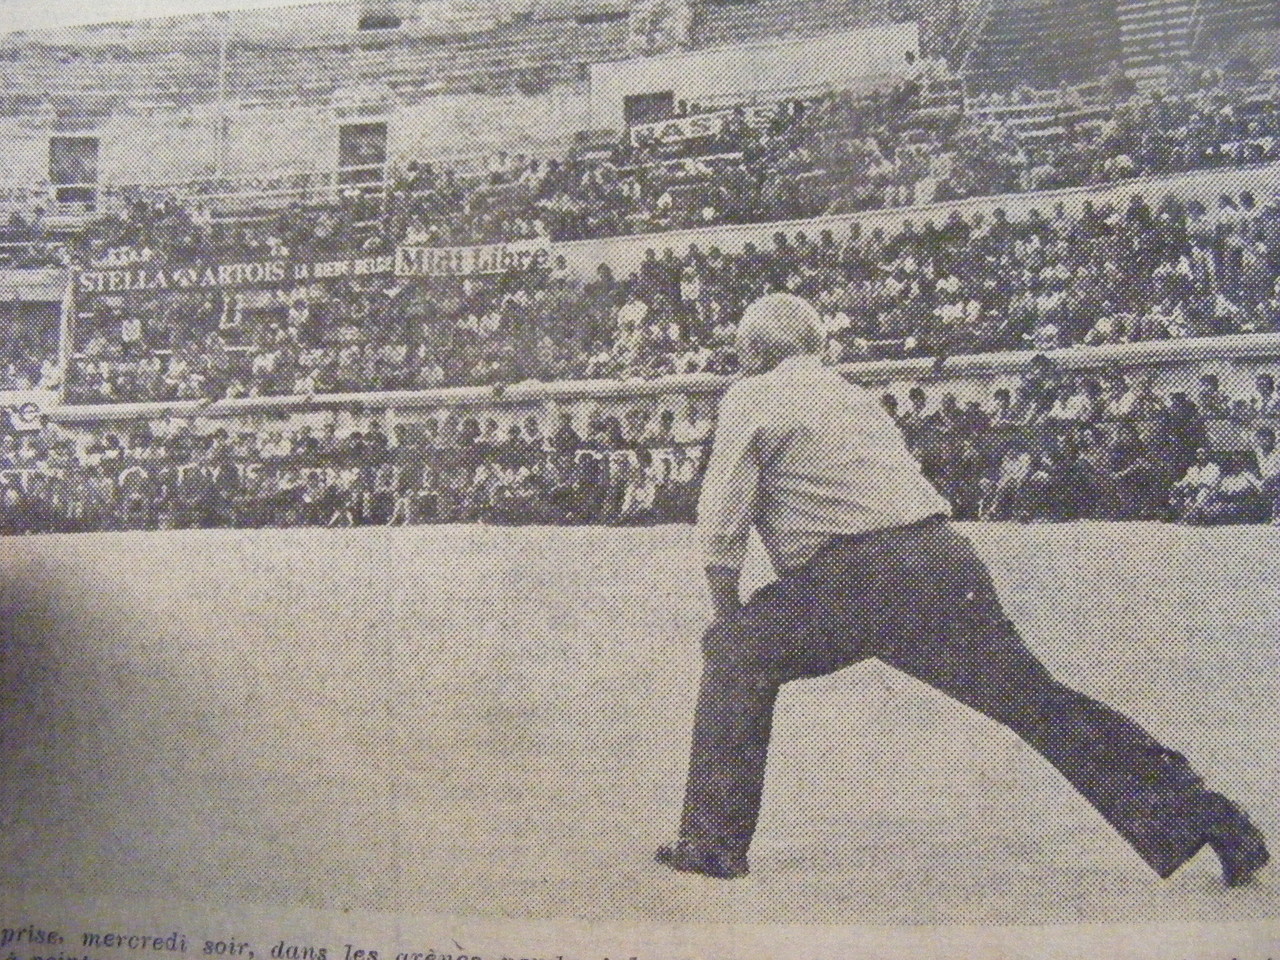 Antoine Arpinon en finale du Midi Libre 1976 dans le arènes de Nîmes bondées.